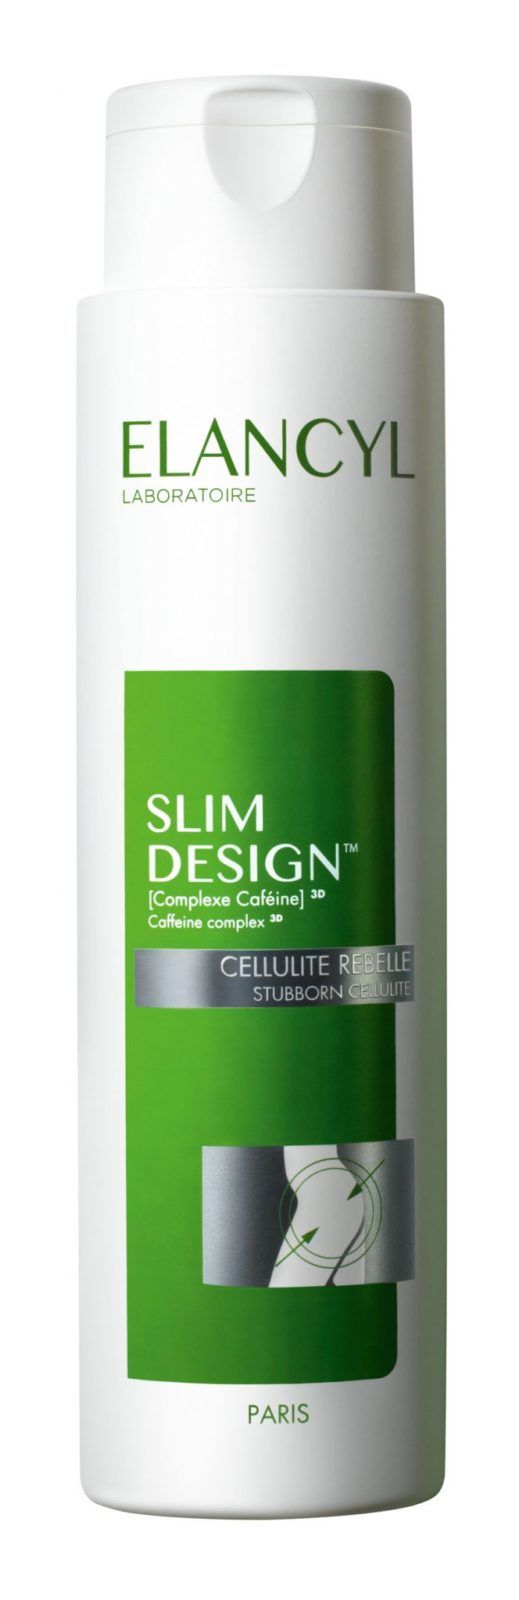 Elancyl Slim Design концентрат антицеллюлитный Кофеин 3D комплекс, концентрат, 200 мл, 1 шт.